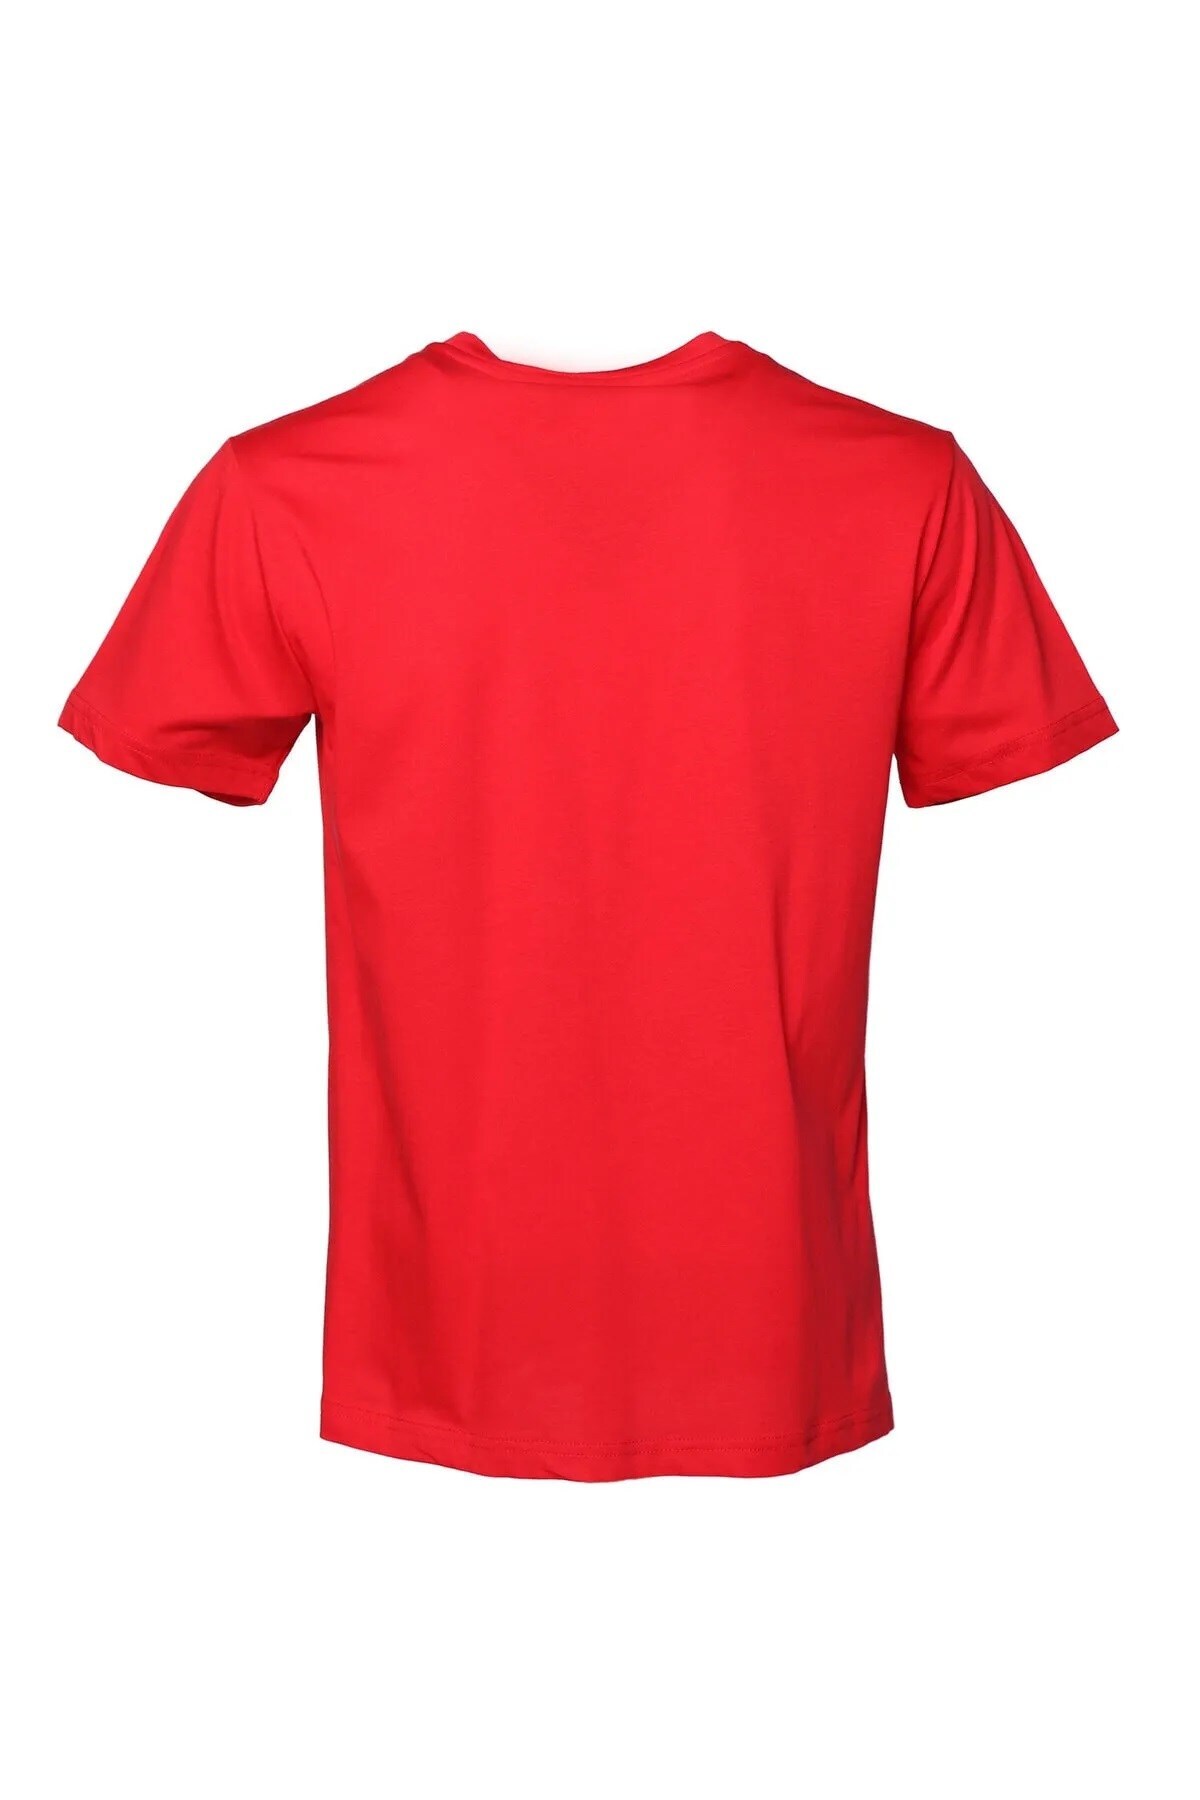 HUMMEL تی شرت مردانه dante